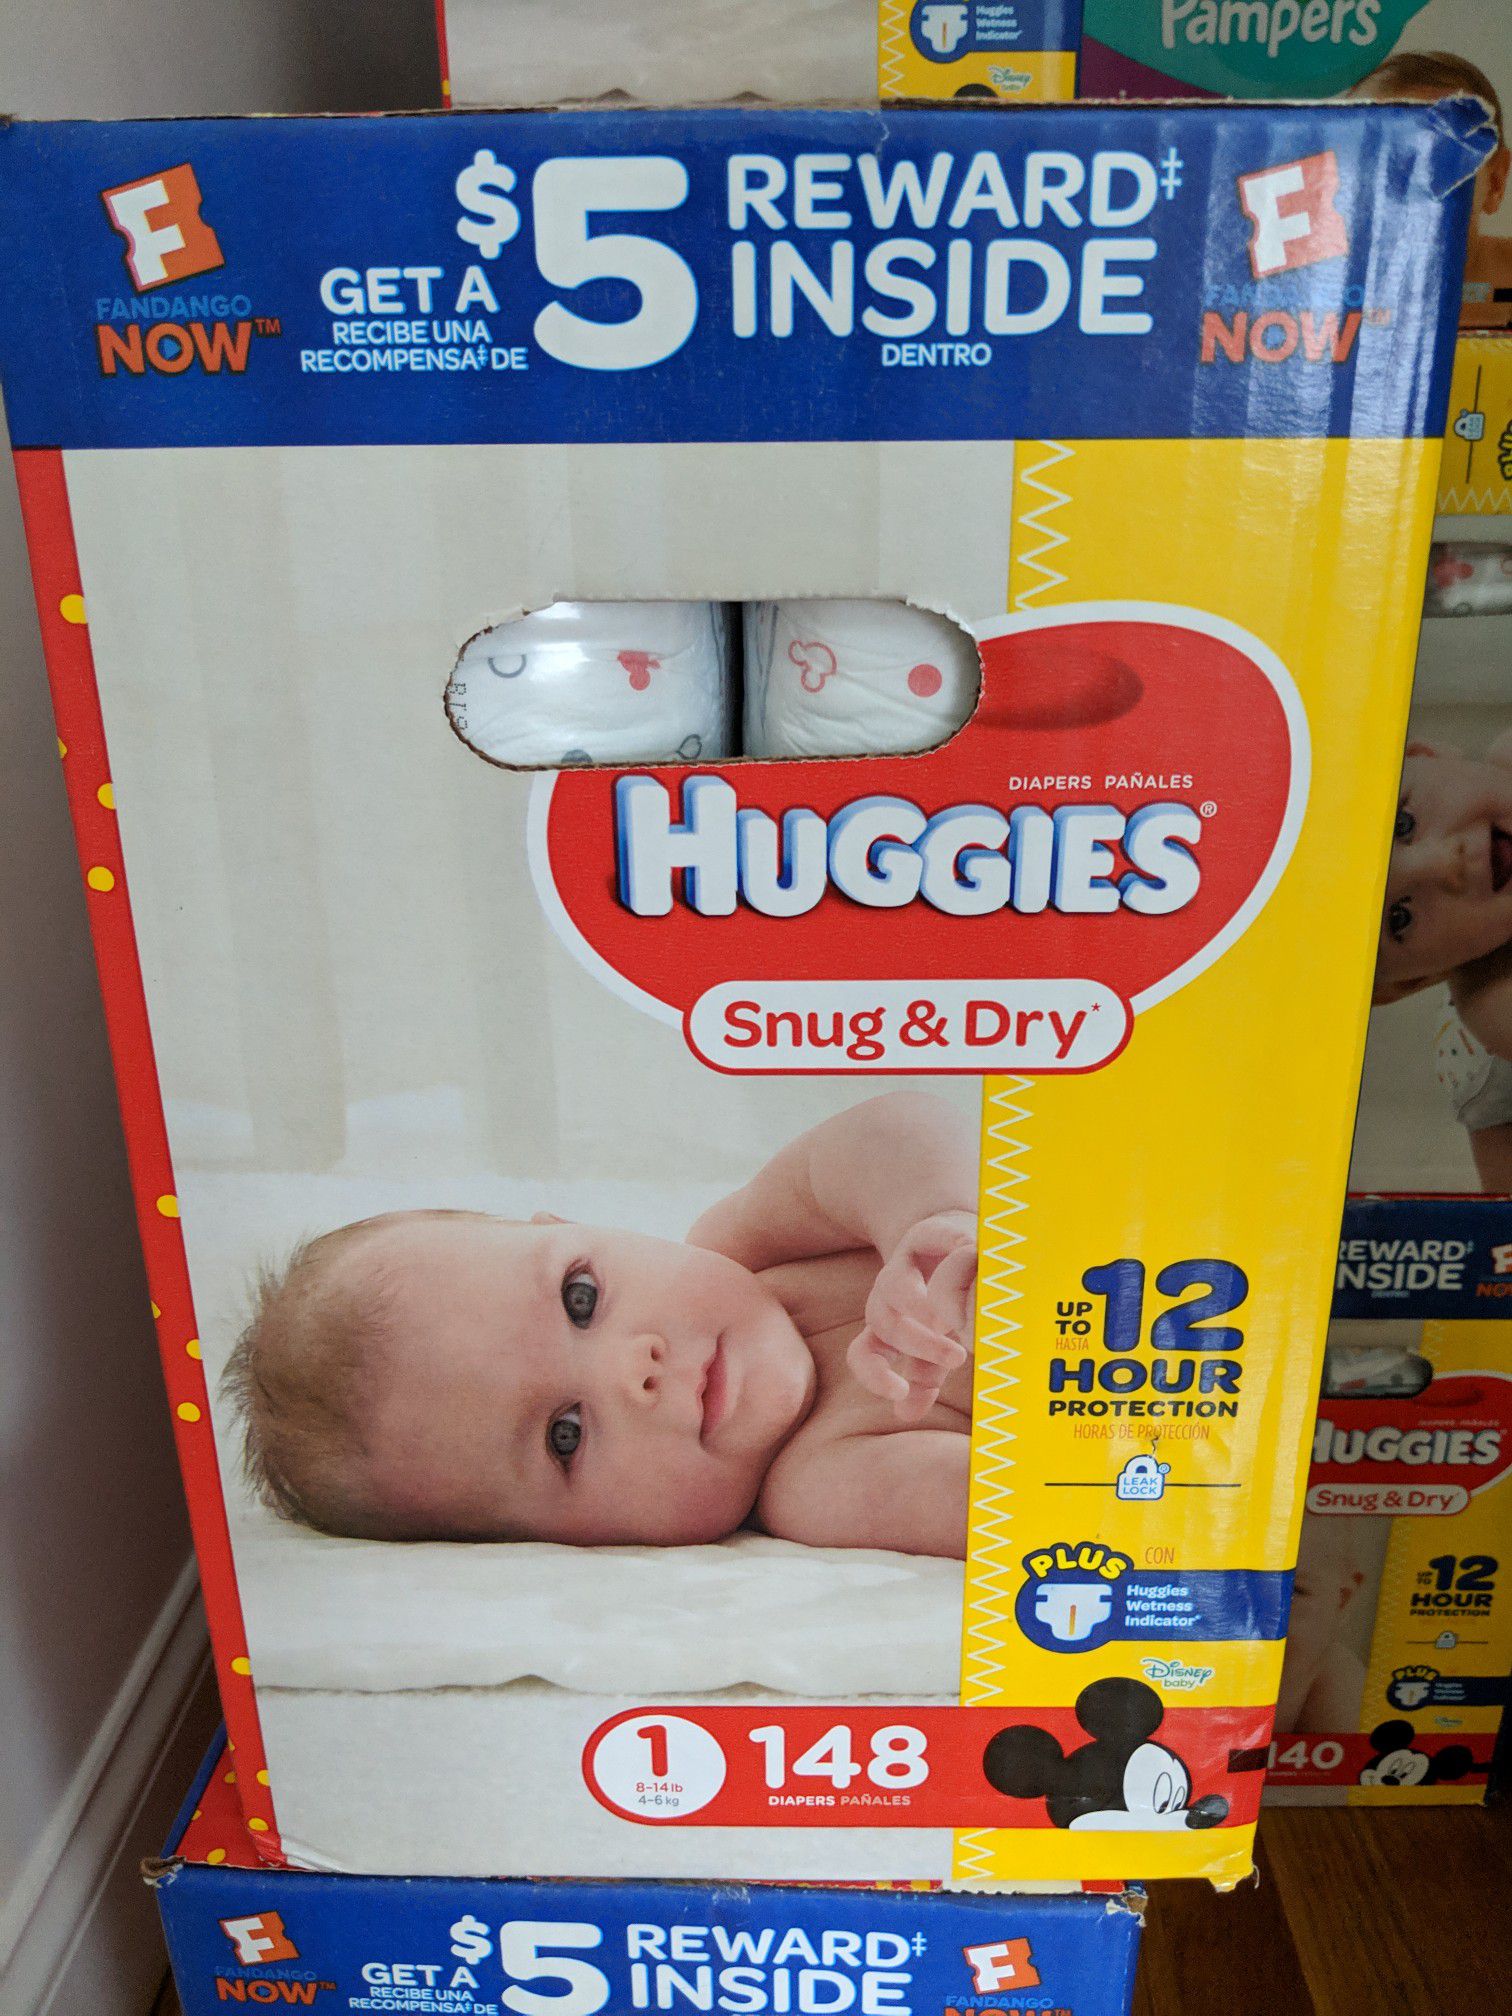 Huggies snug and dry